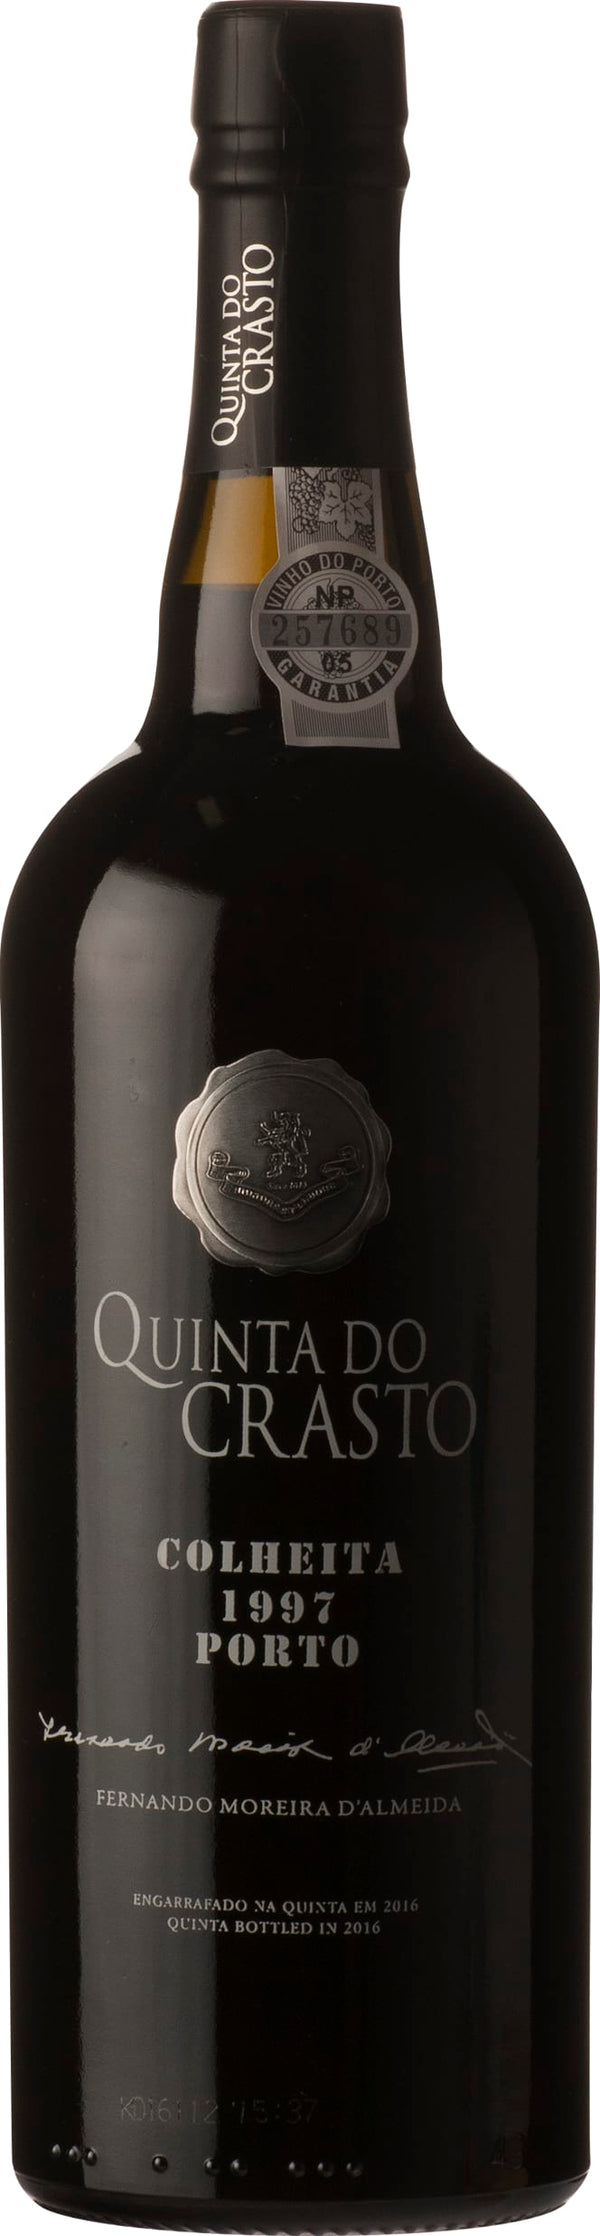 Quinta Do Crasto Colheita 2003 6x75cl - Just Wines 